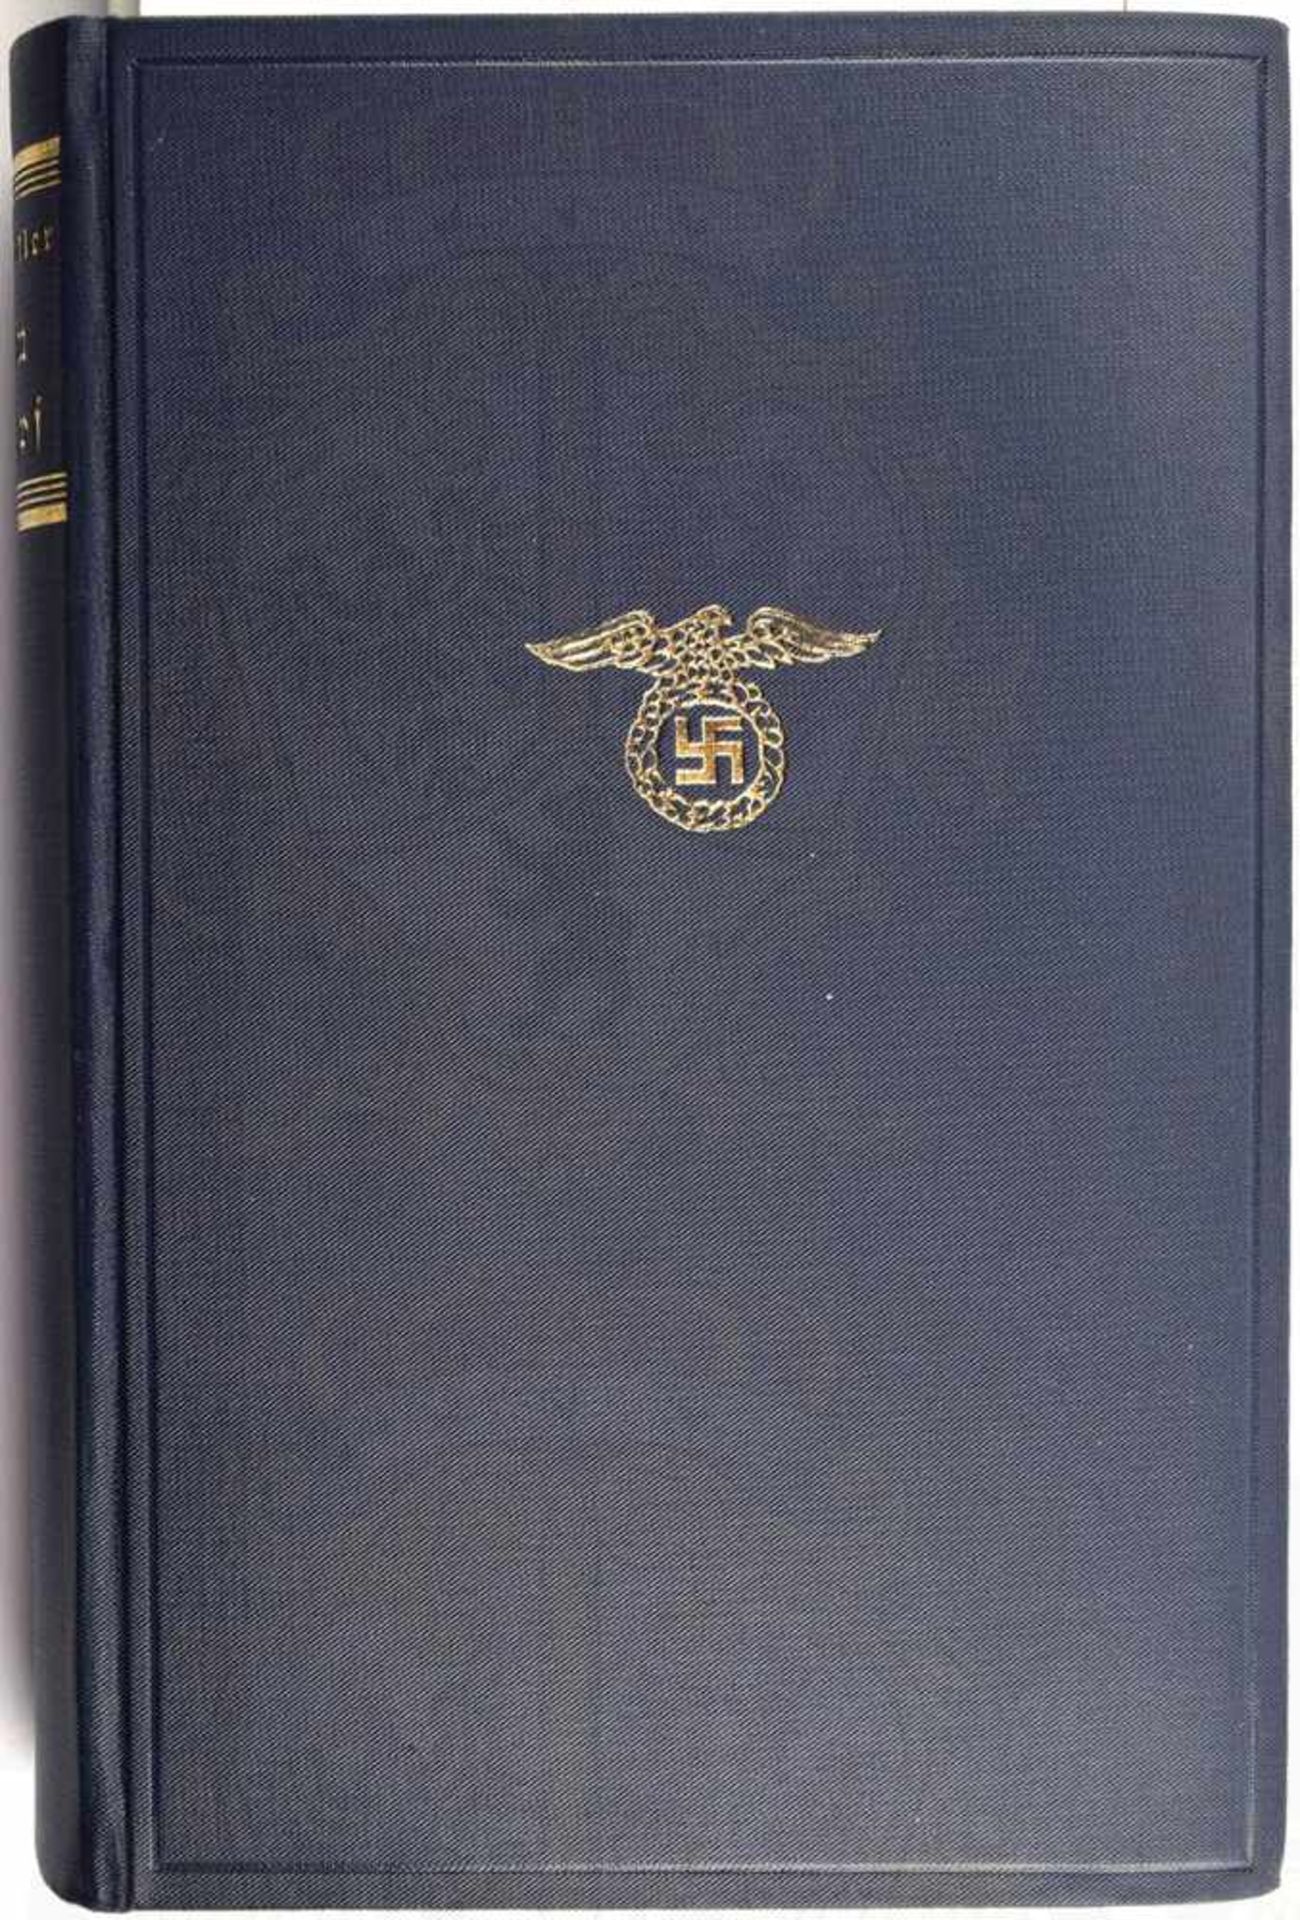 MEIN KAMPF, Adolf Hitler, Volksausgabe, Eher Verlag, München 1935, 781 S., 1 Porträtbild,